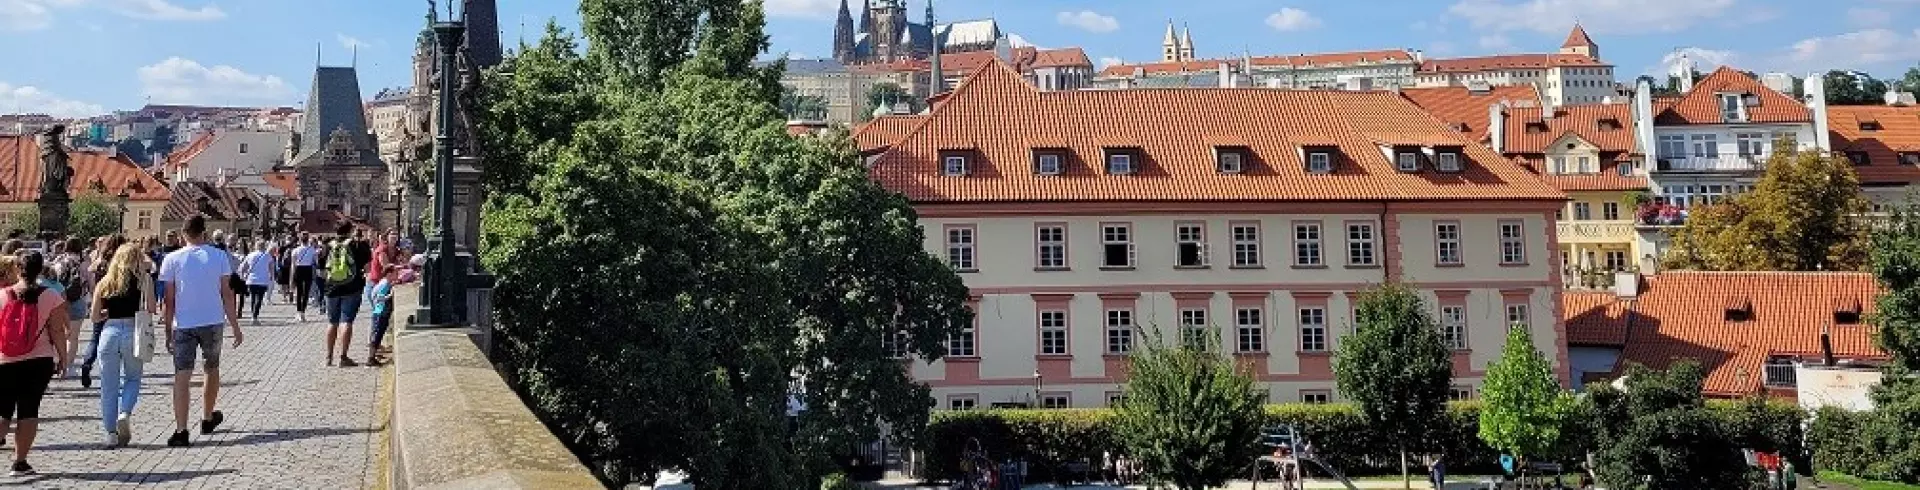 Wrocław, Karkonosze, Praga